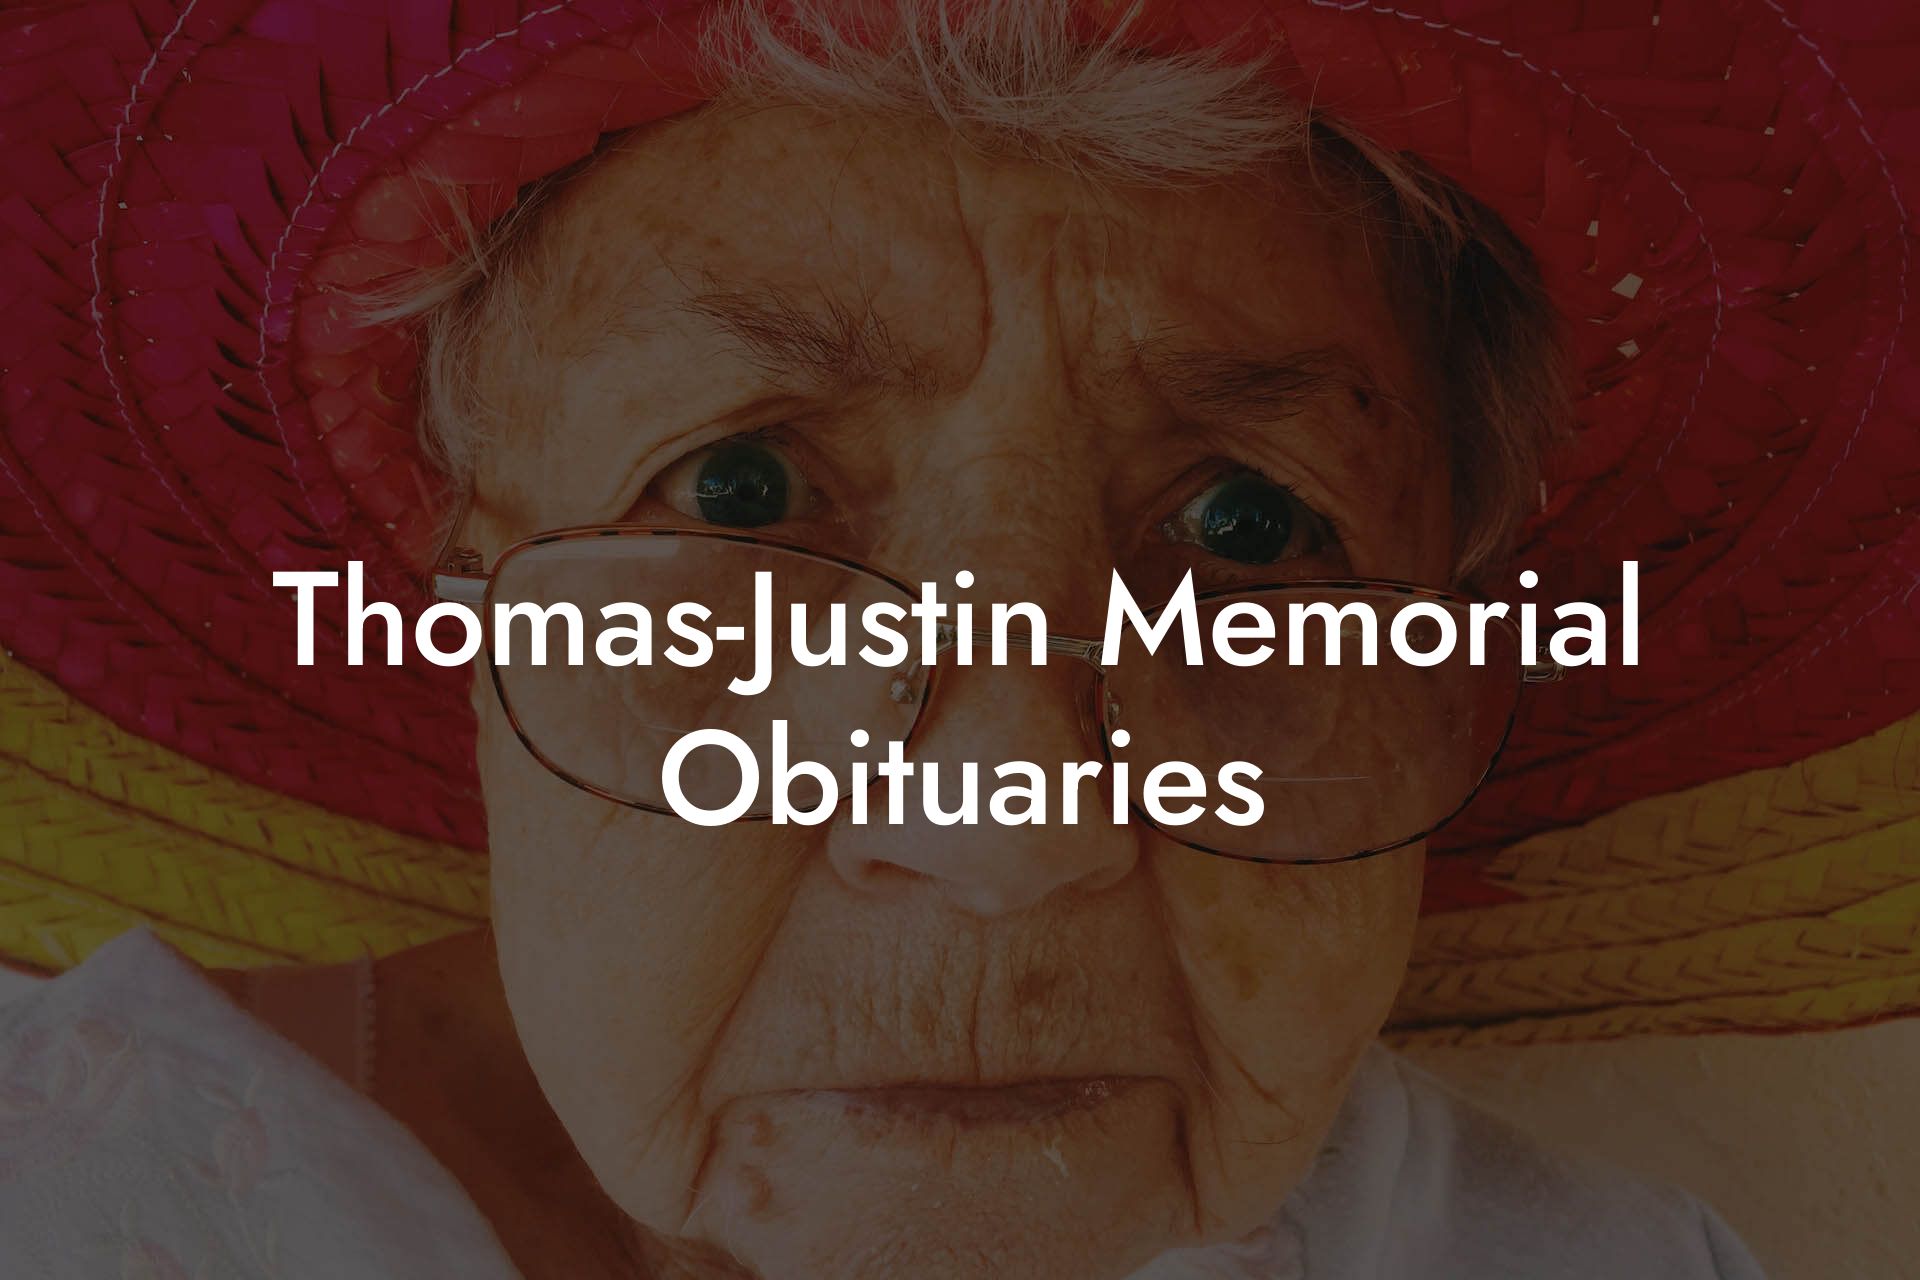 Thomas-Justin Memorial Obituaries